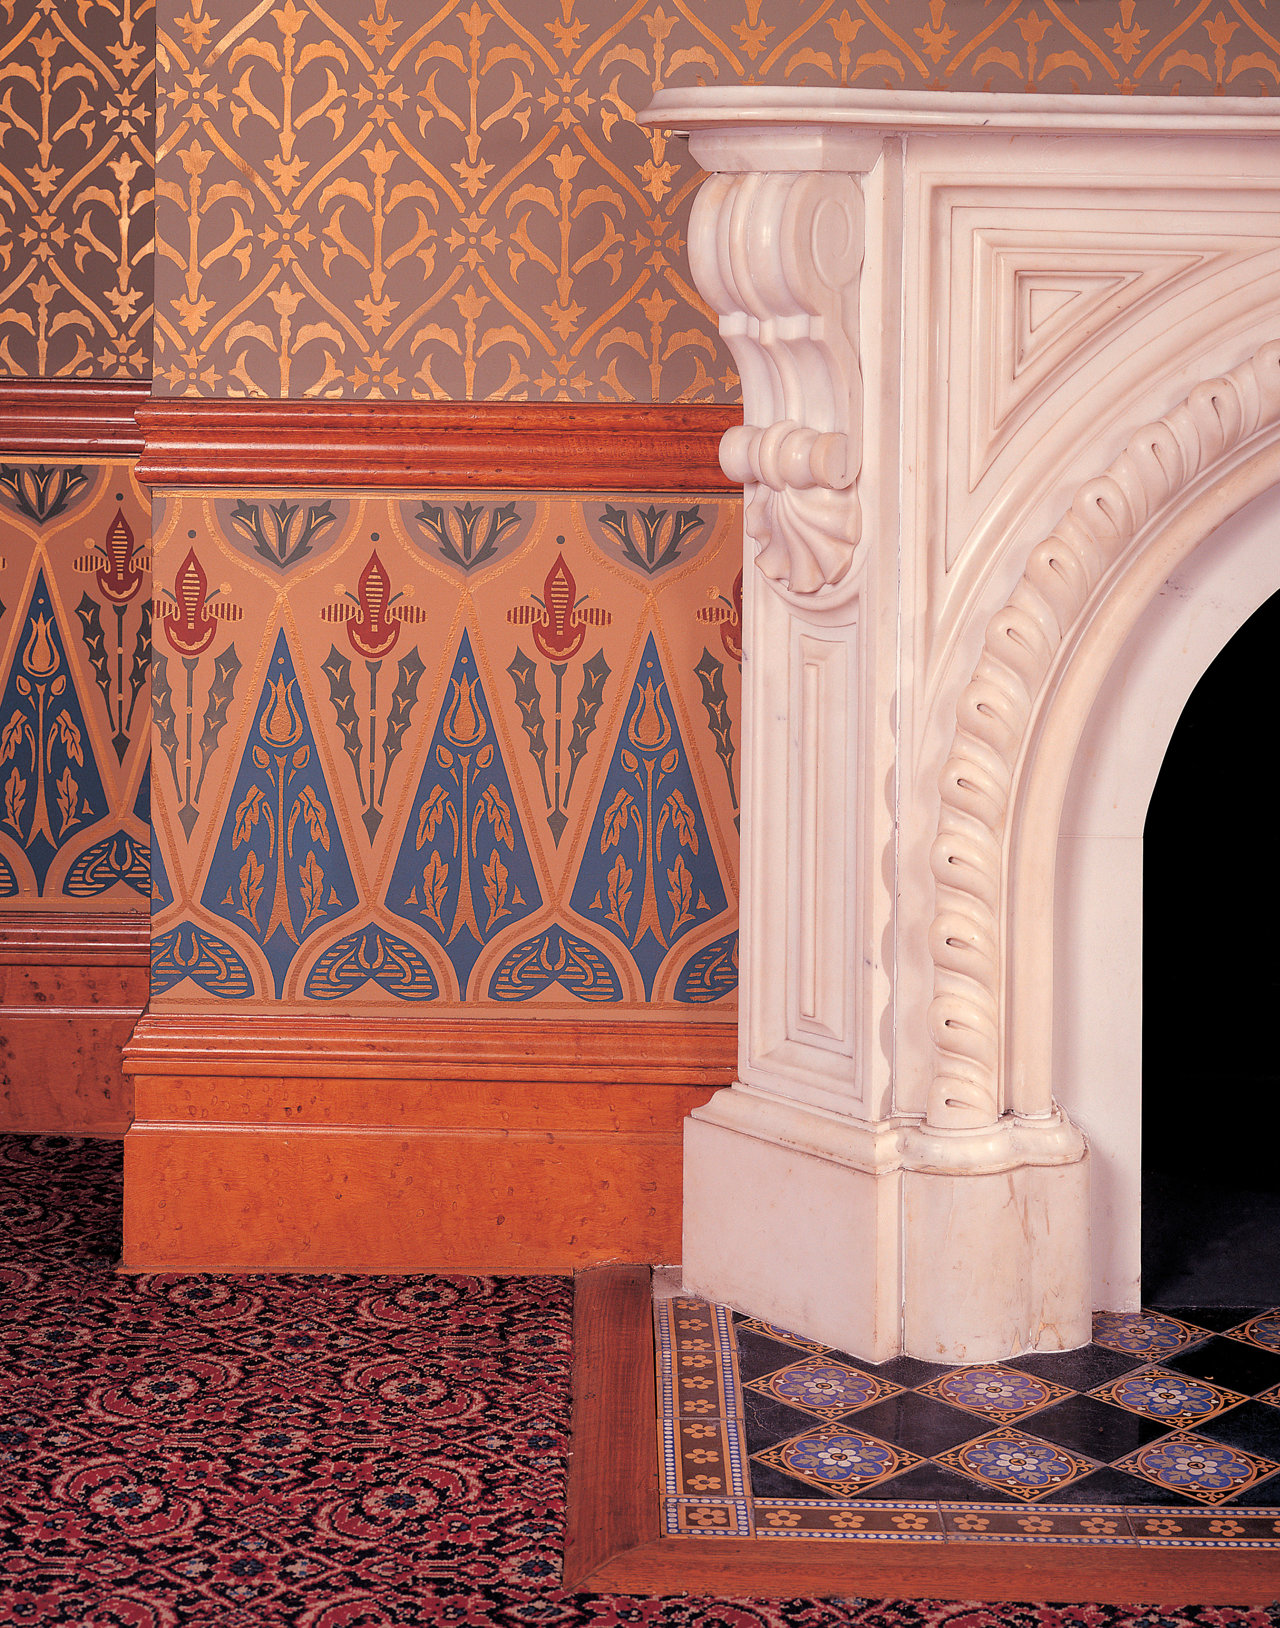 En el dormitorio de Jed, chimenea de mármol blanco de mediados del XIX se complementa con el intrincado papel pintado. Los azulejos del suelo, la carpintería y la moqueta completan el diseño.